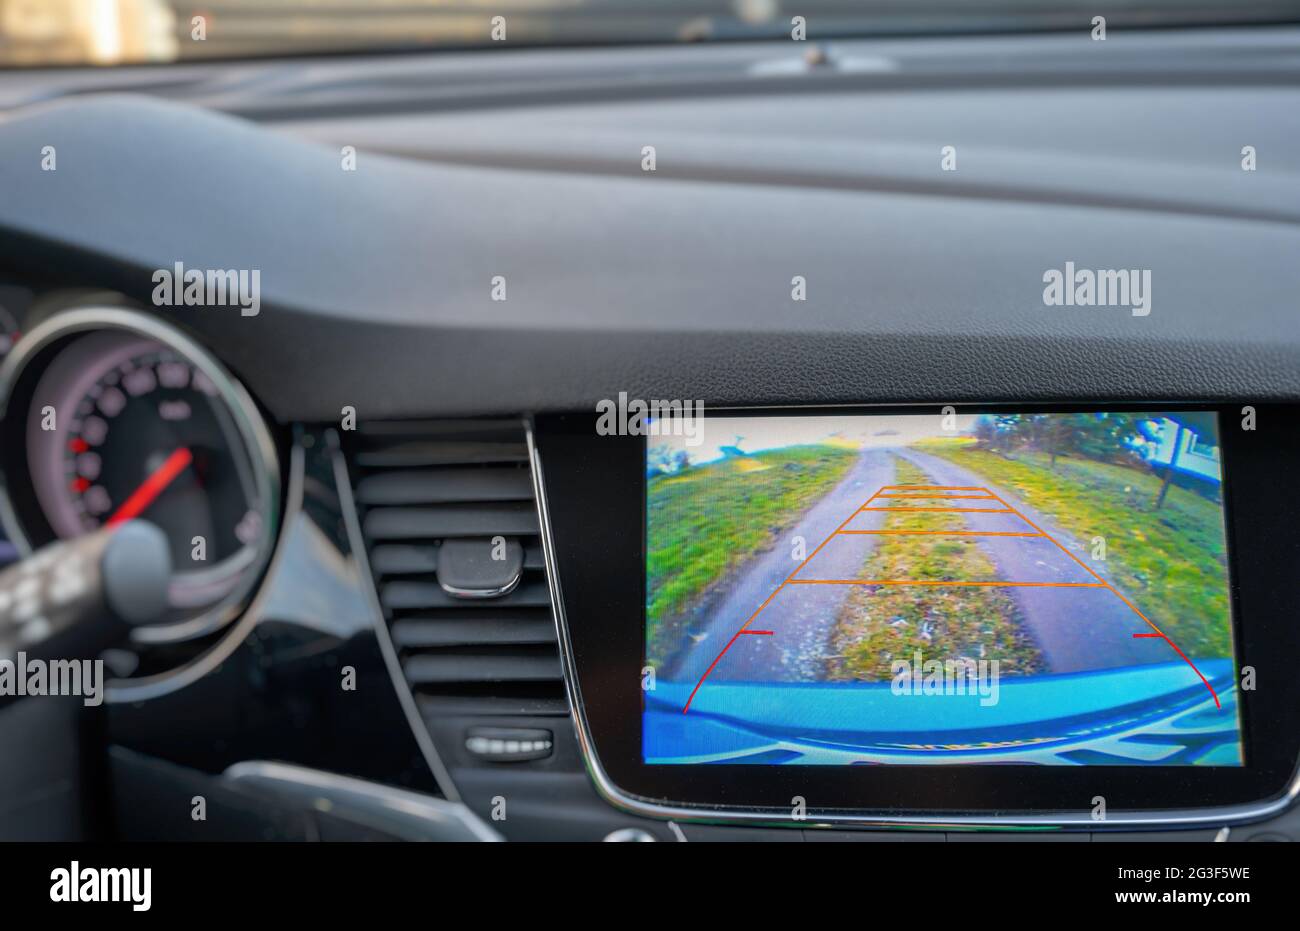 Affichage dans le tableau de bord d'une voiture avec vue de la caméra de recul pour faciliter la marche arrière ou le stationnement Banque D'Images